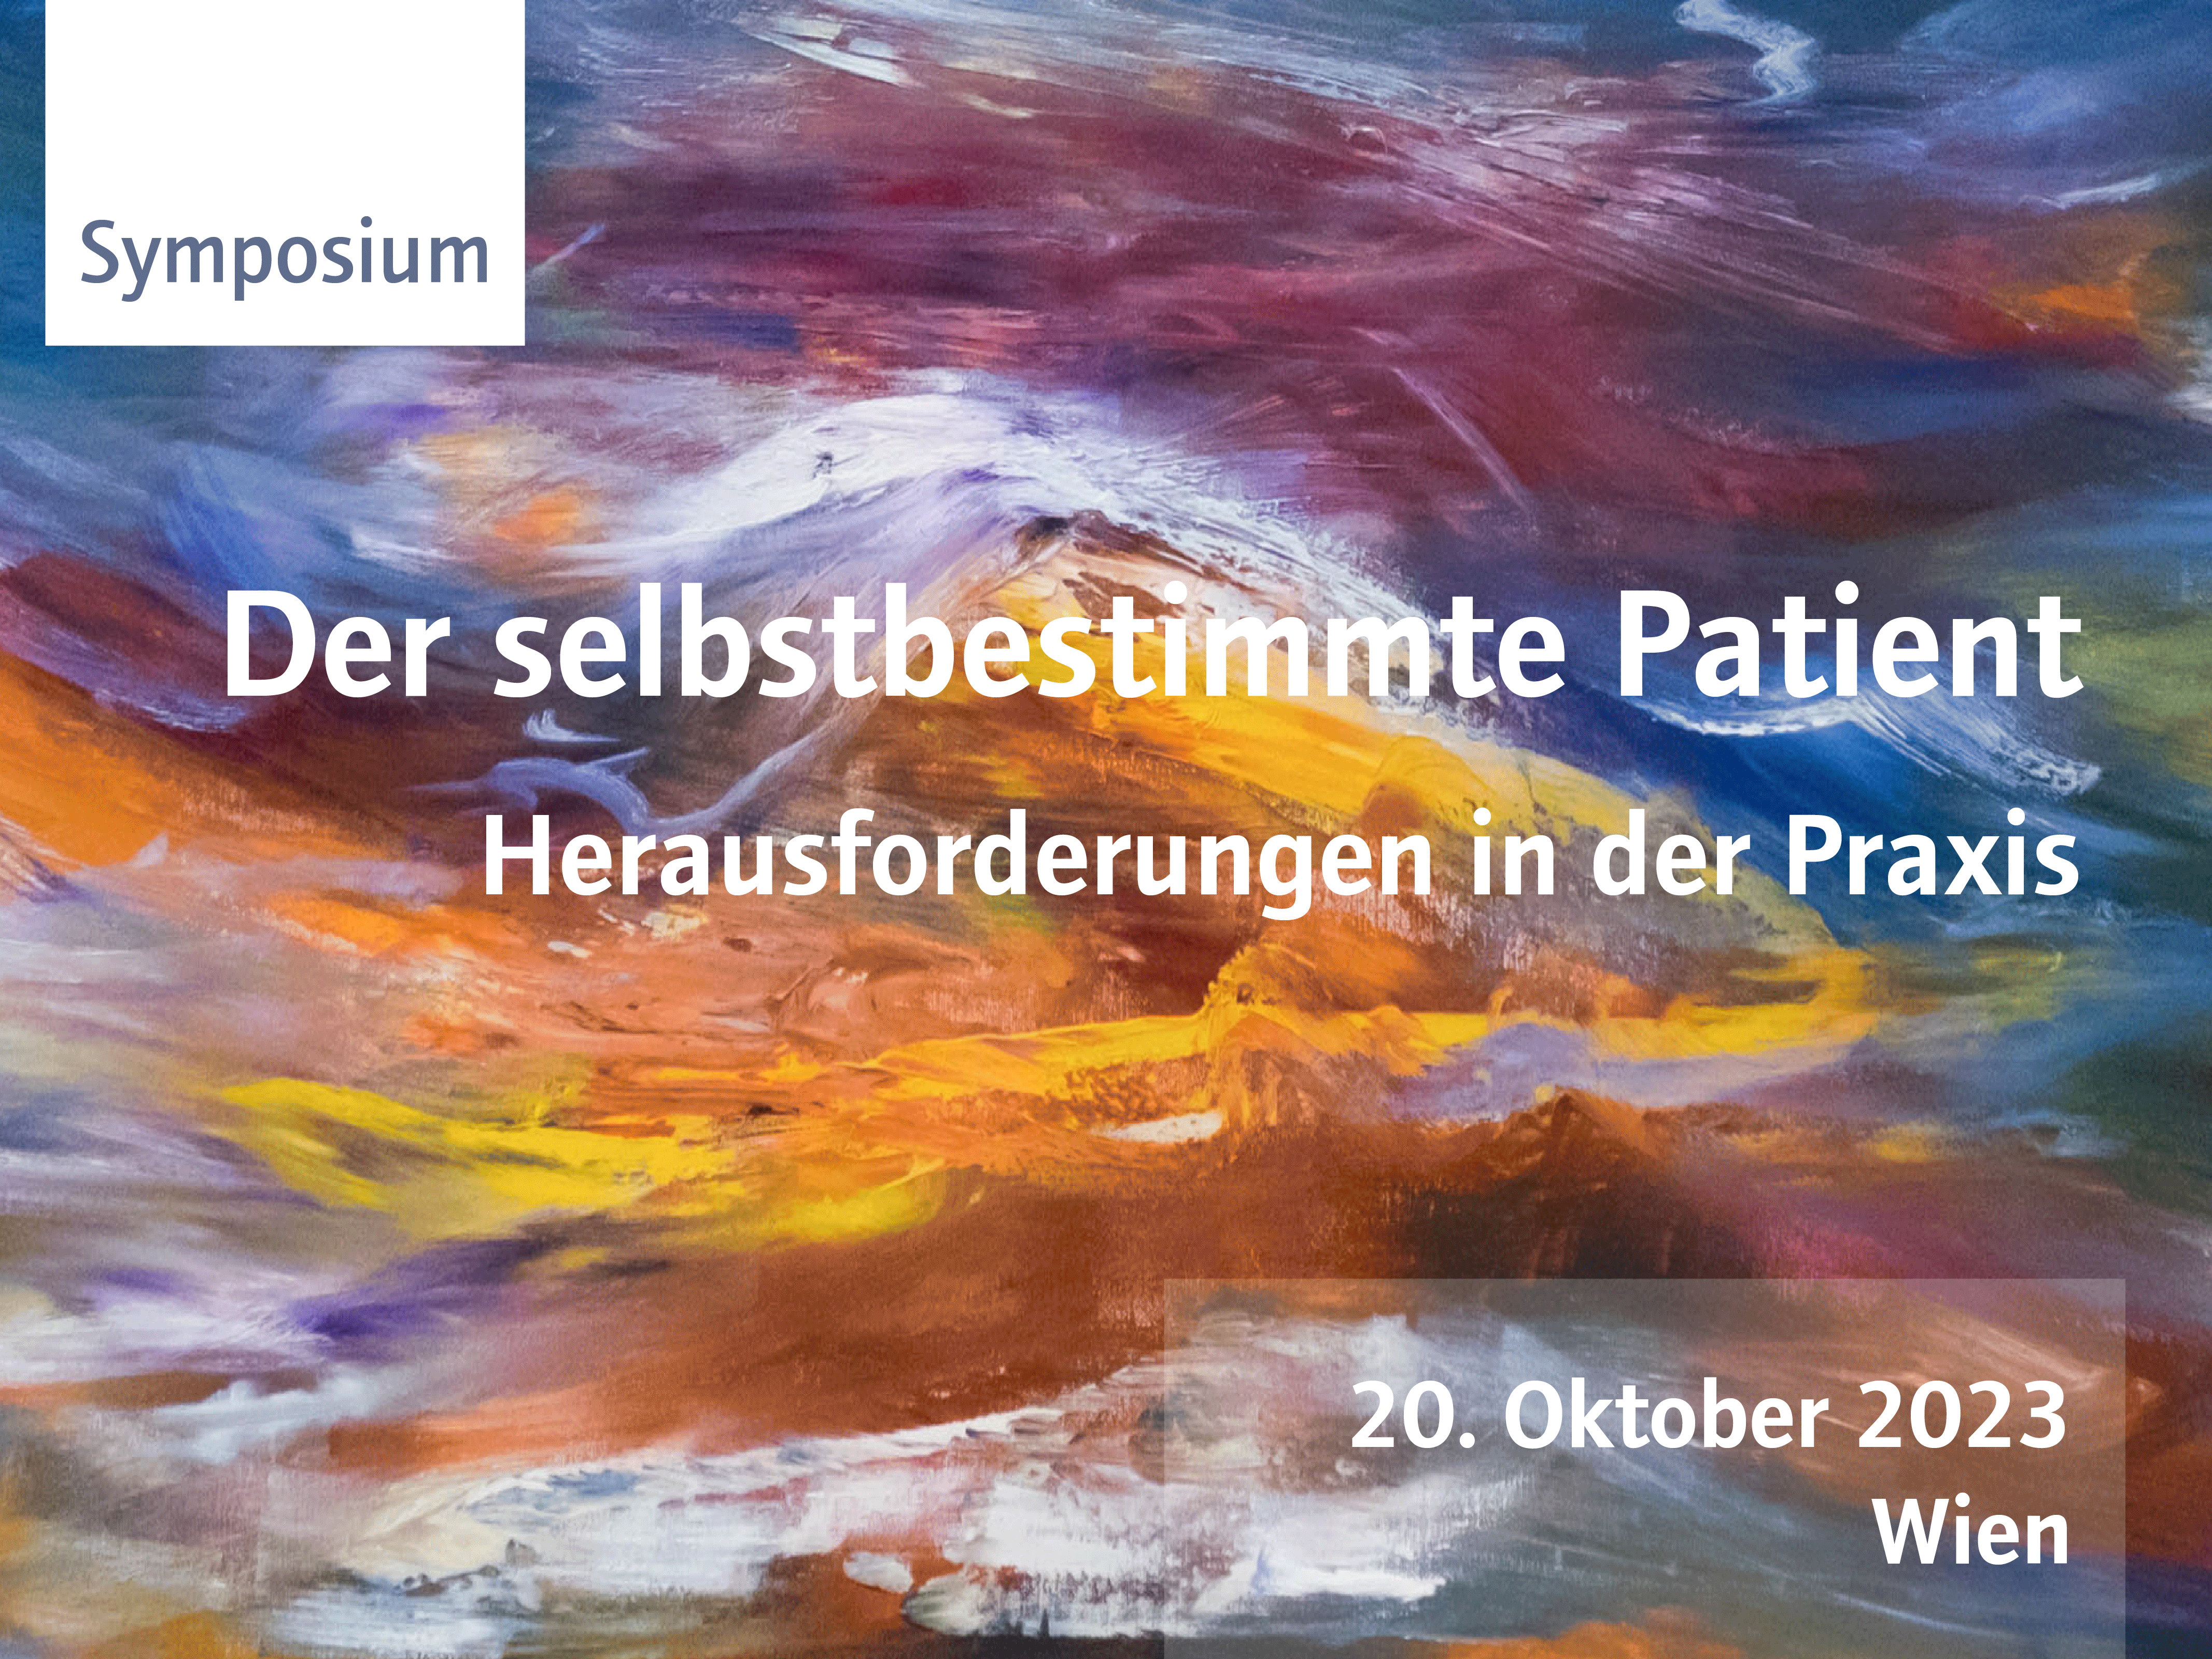 Imabe Symposium: Der selbstbestimmte Patient - Herausforderungen in der Praxis